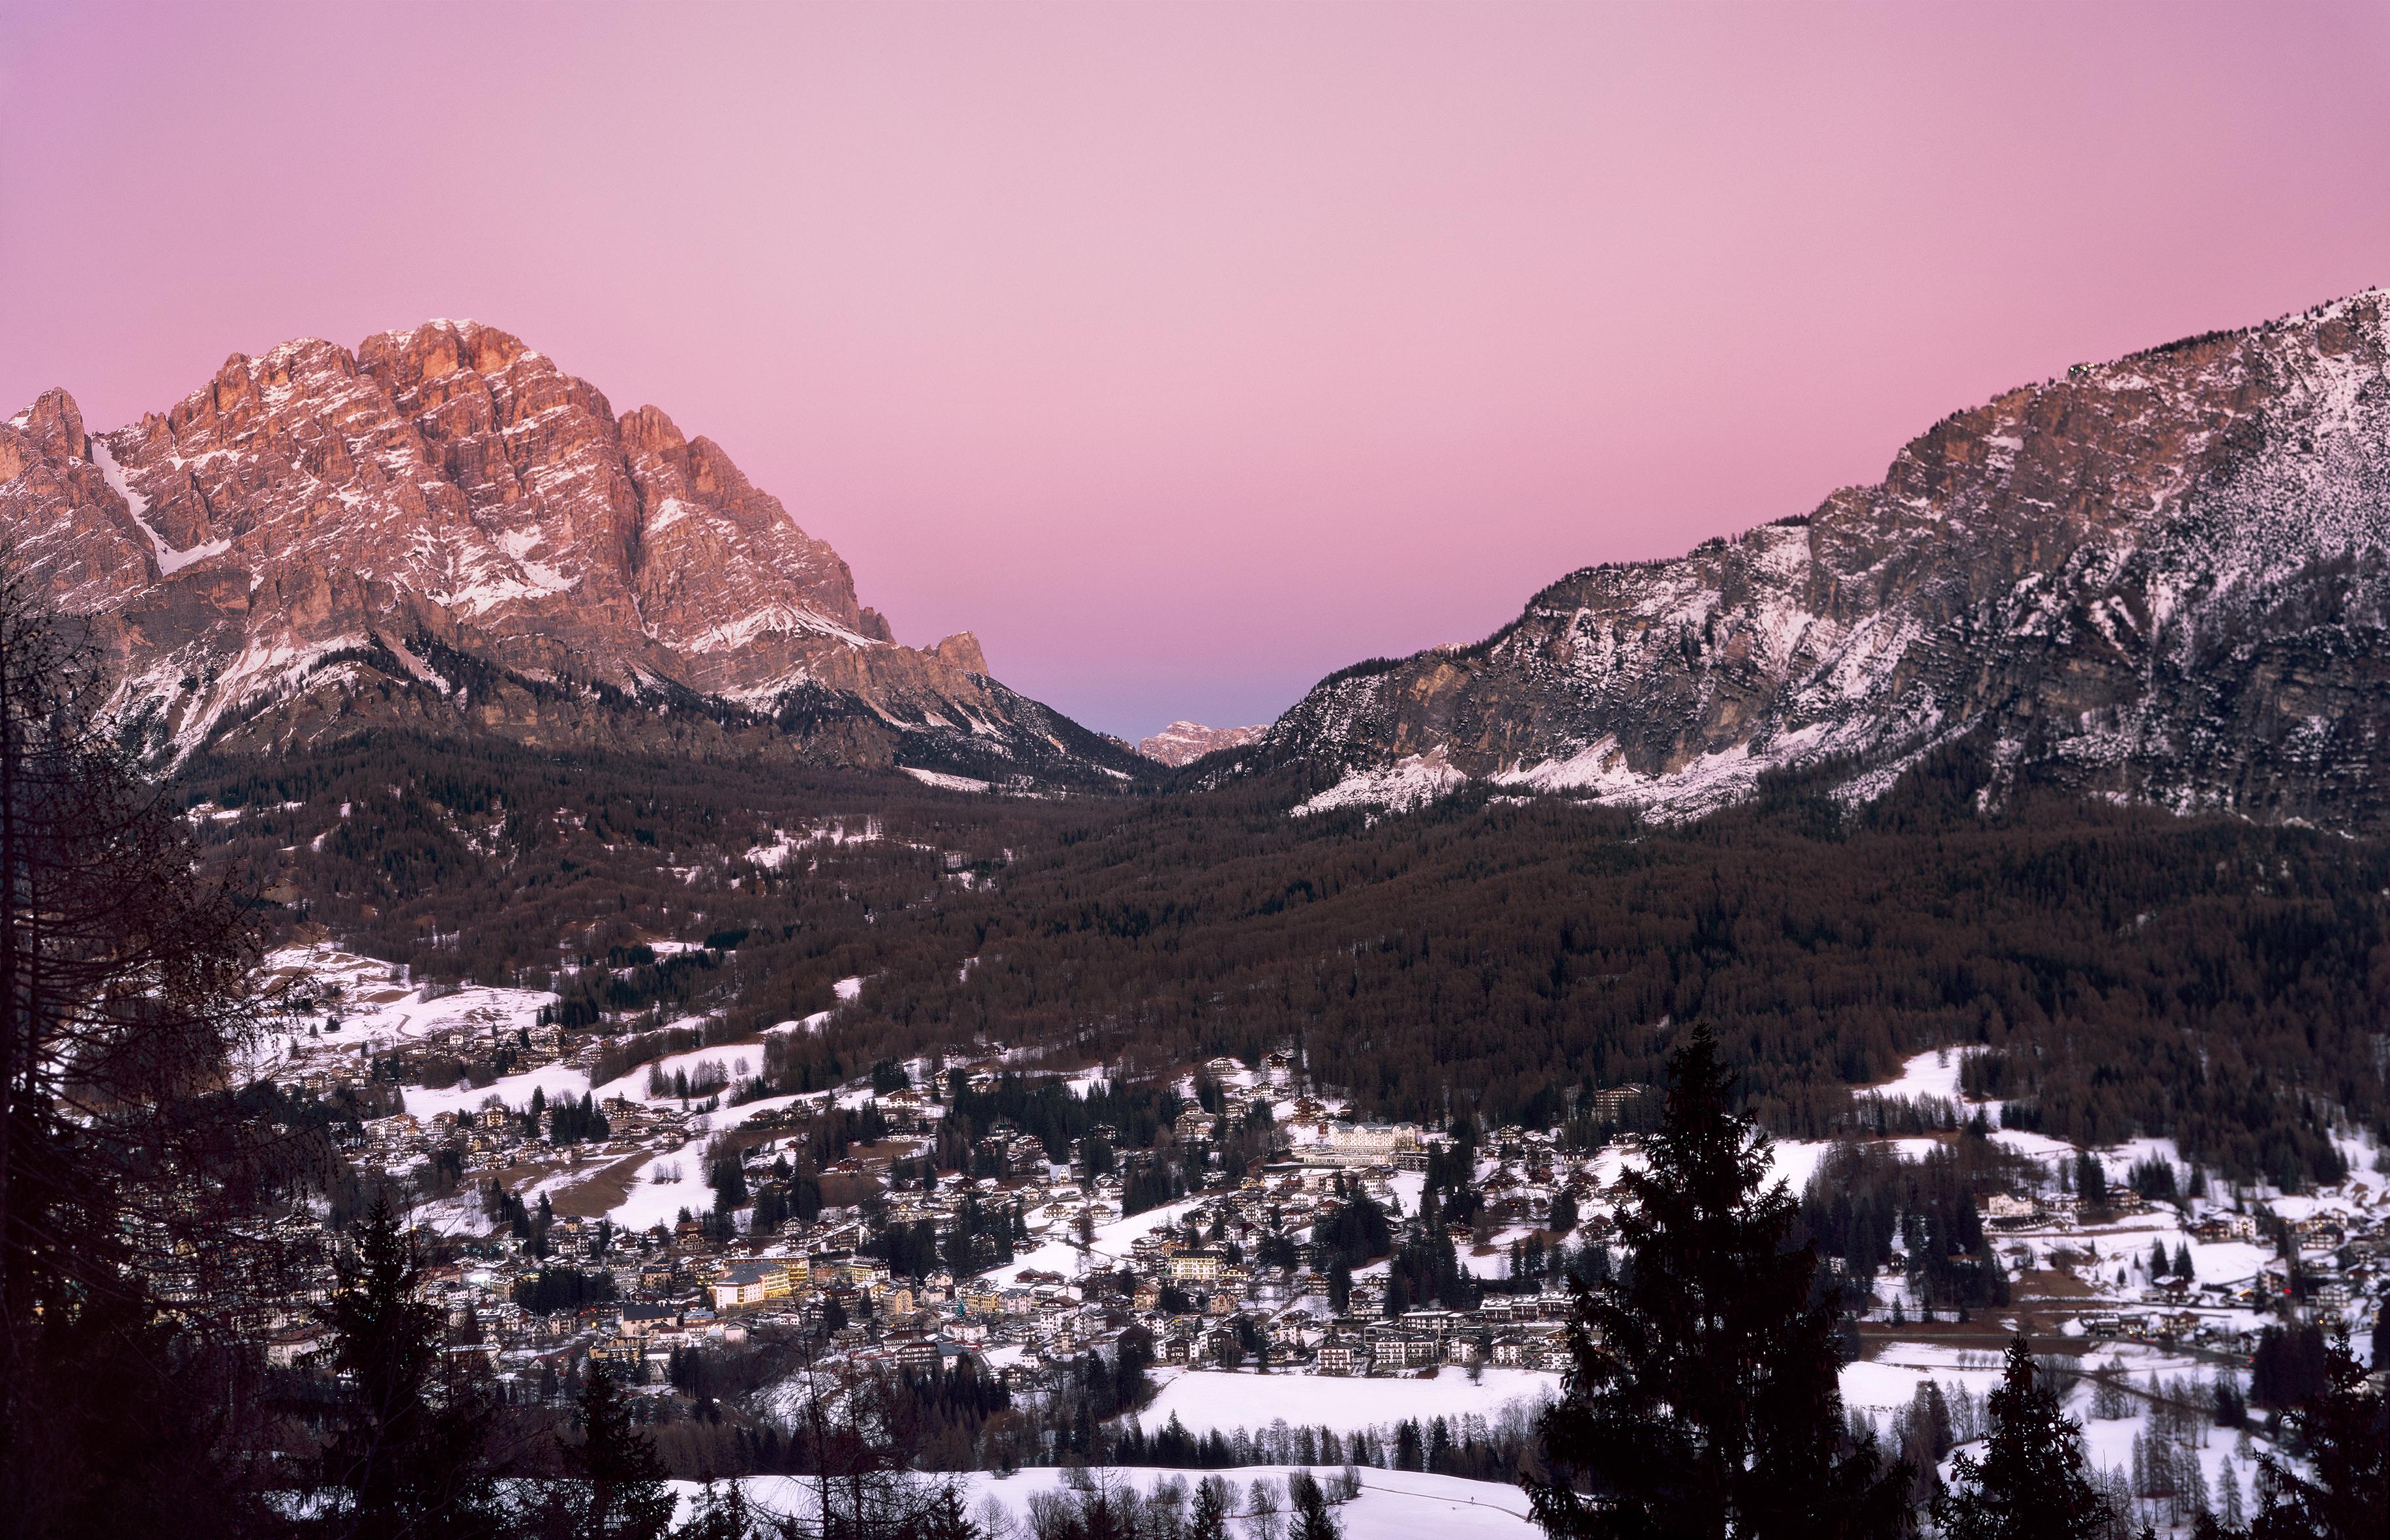 Ugne Pouwell Landscape Photograph – Cortina d'Ampezzo – Analogue-Sonnenuntergangsfotografie der italienischen Dolomiten Berge